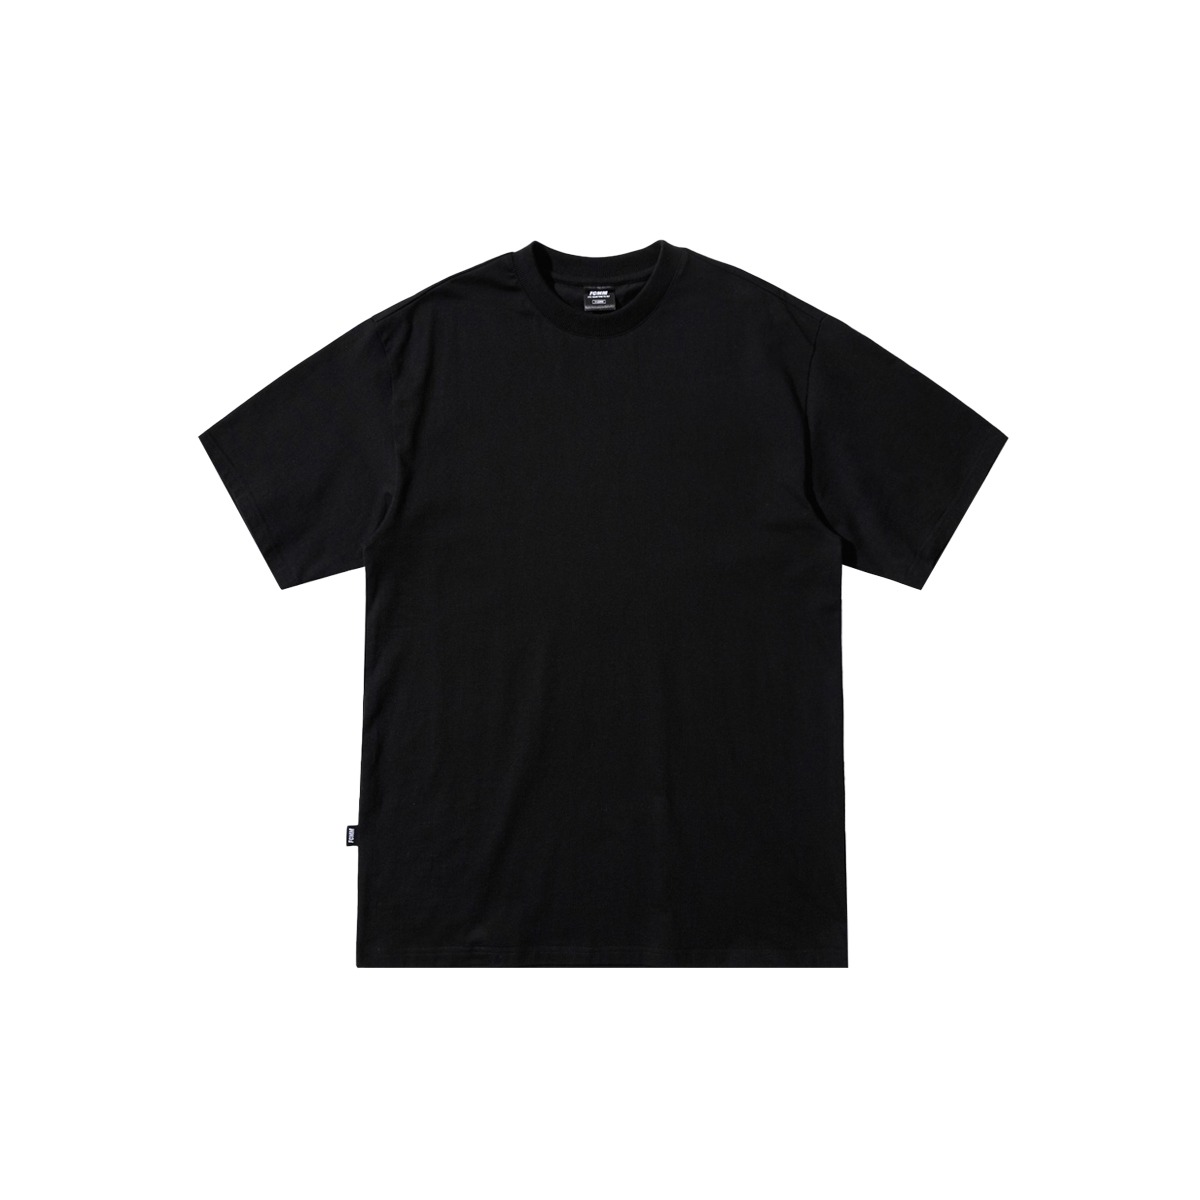 클럽 레이어드 프레쉬 티셔츠 - 블랙